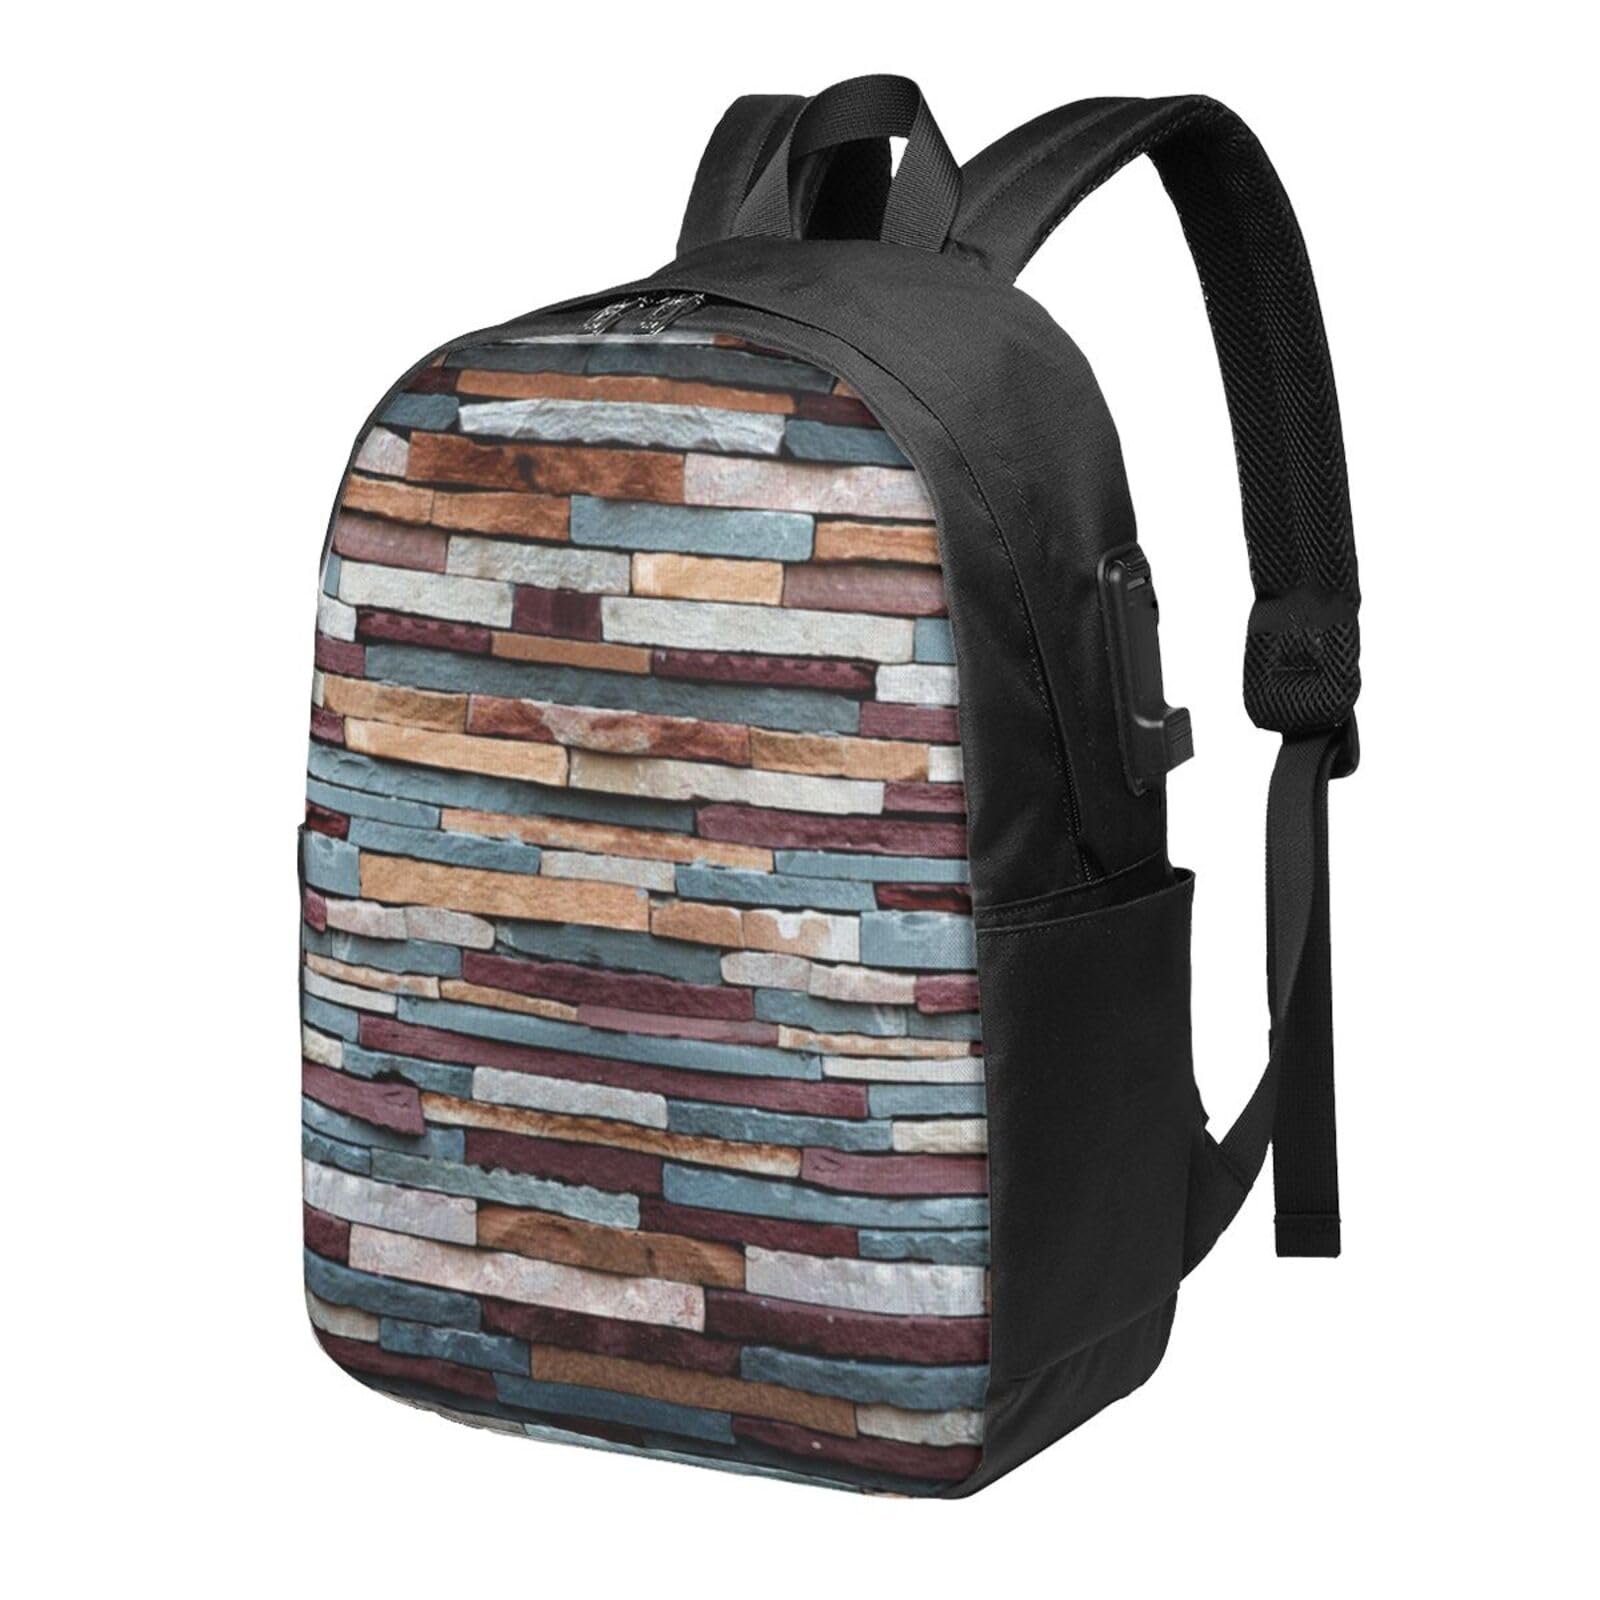 送料無料OUSIKA Stone Laptop Backpack With Usb Charging Port Water Resistant Casual Daypacks Travel Bag For Men Women並